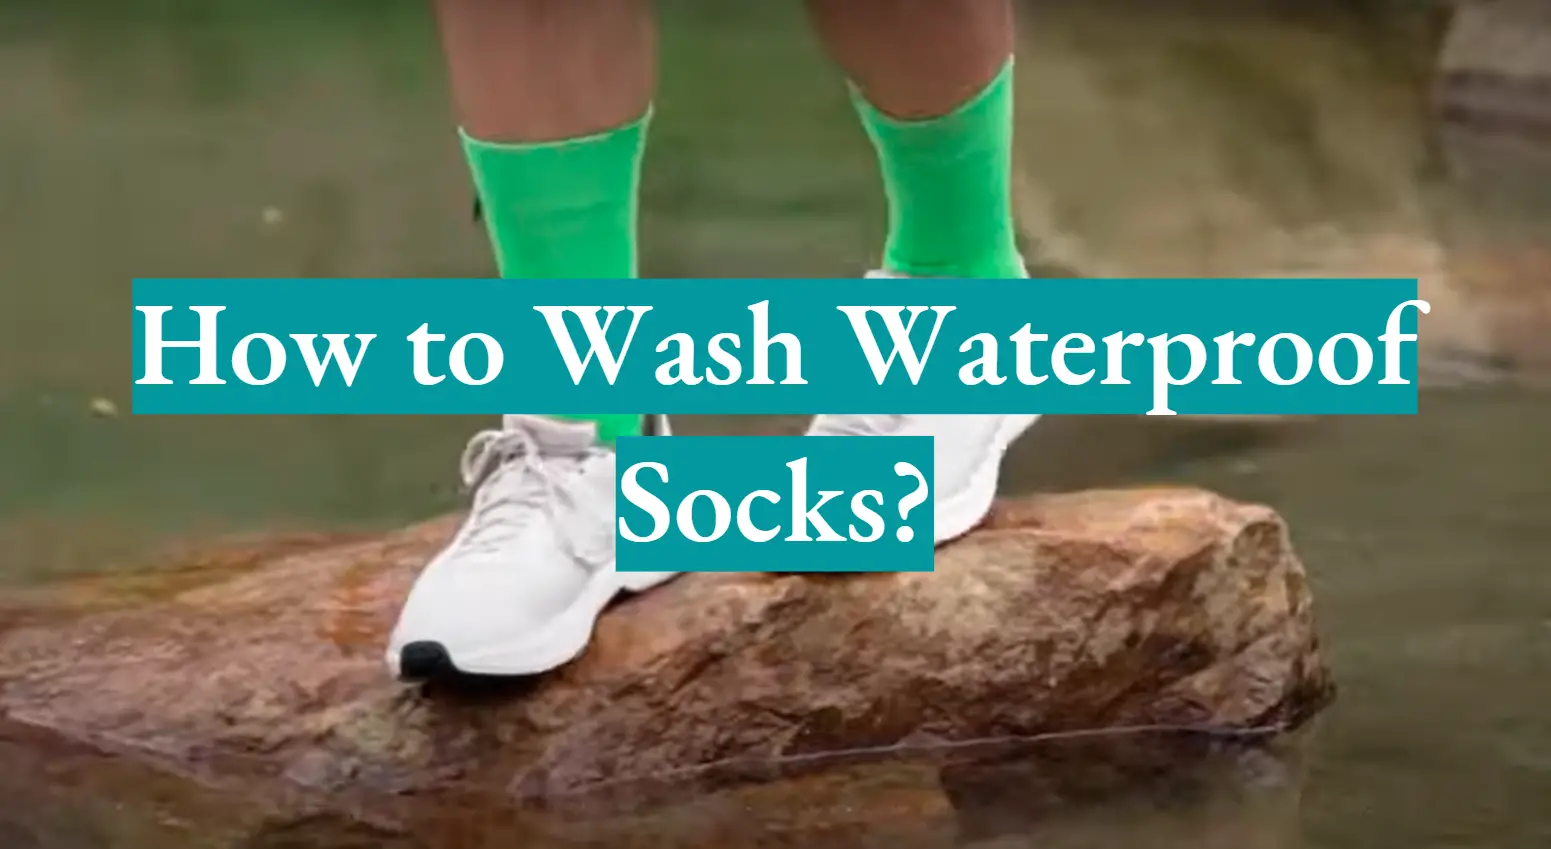 How to Wash Waterproof Socks?